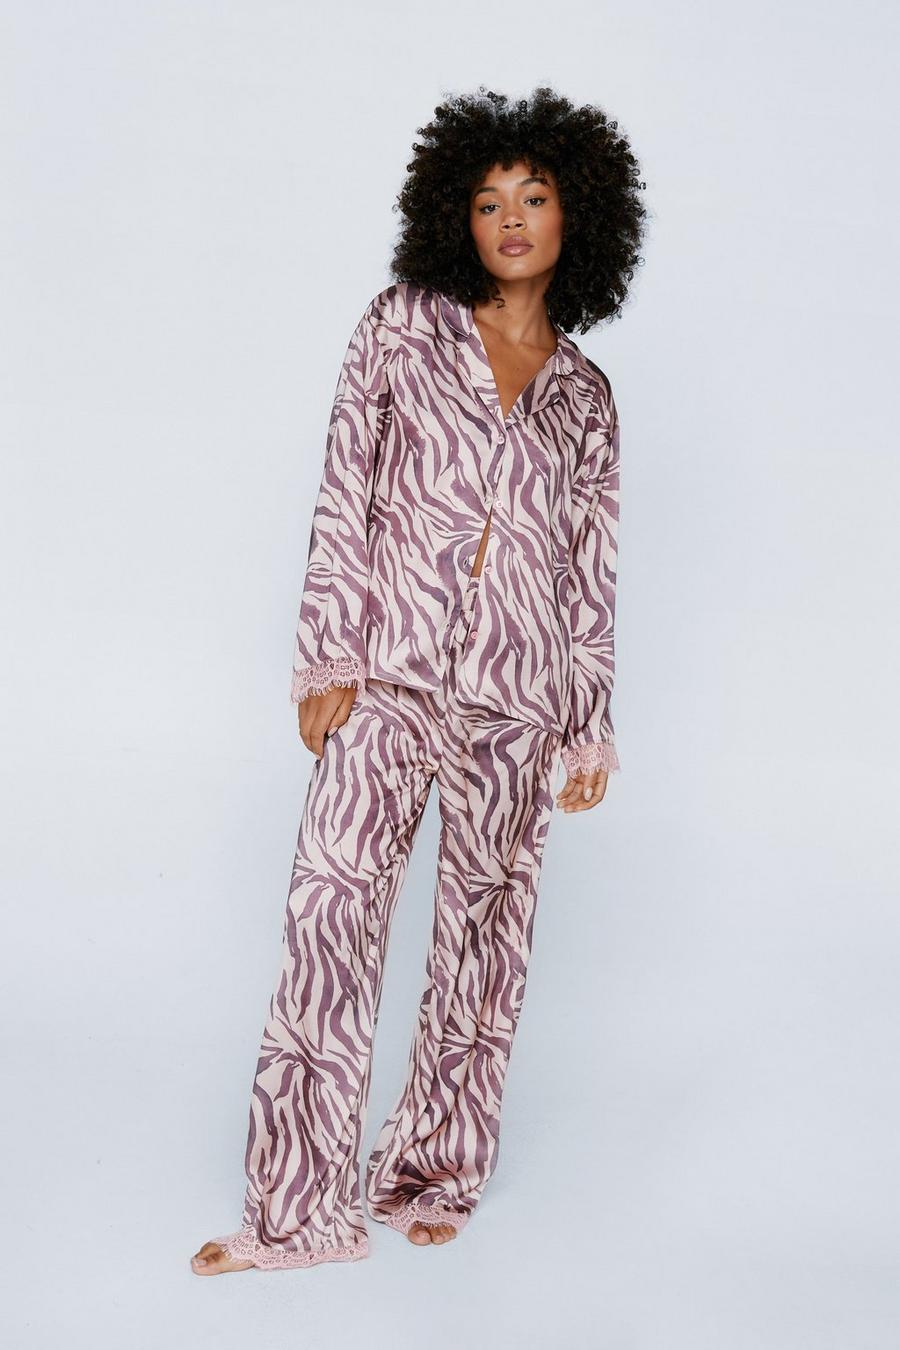 Satin Zebra Print Contrast Lace Pajama Shirt and Pants Set